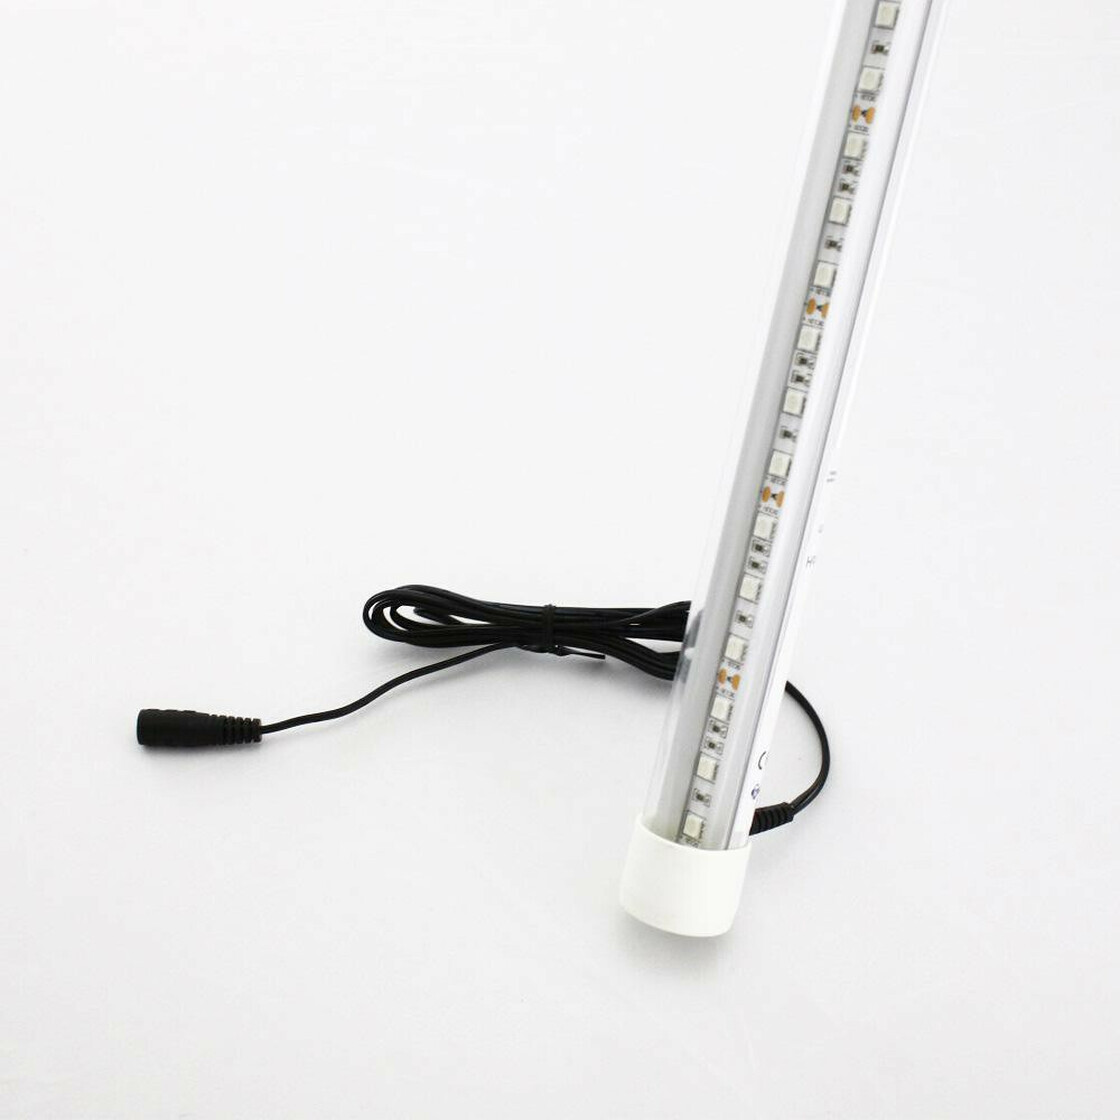 Neonröhre 120cm online kaufen